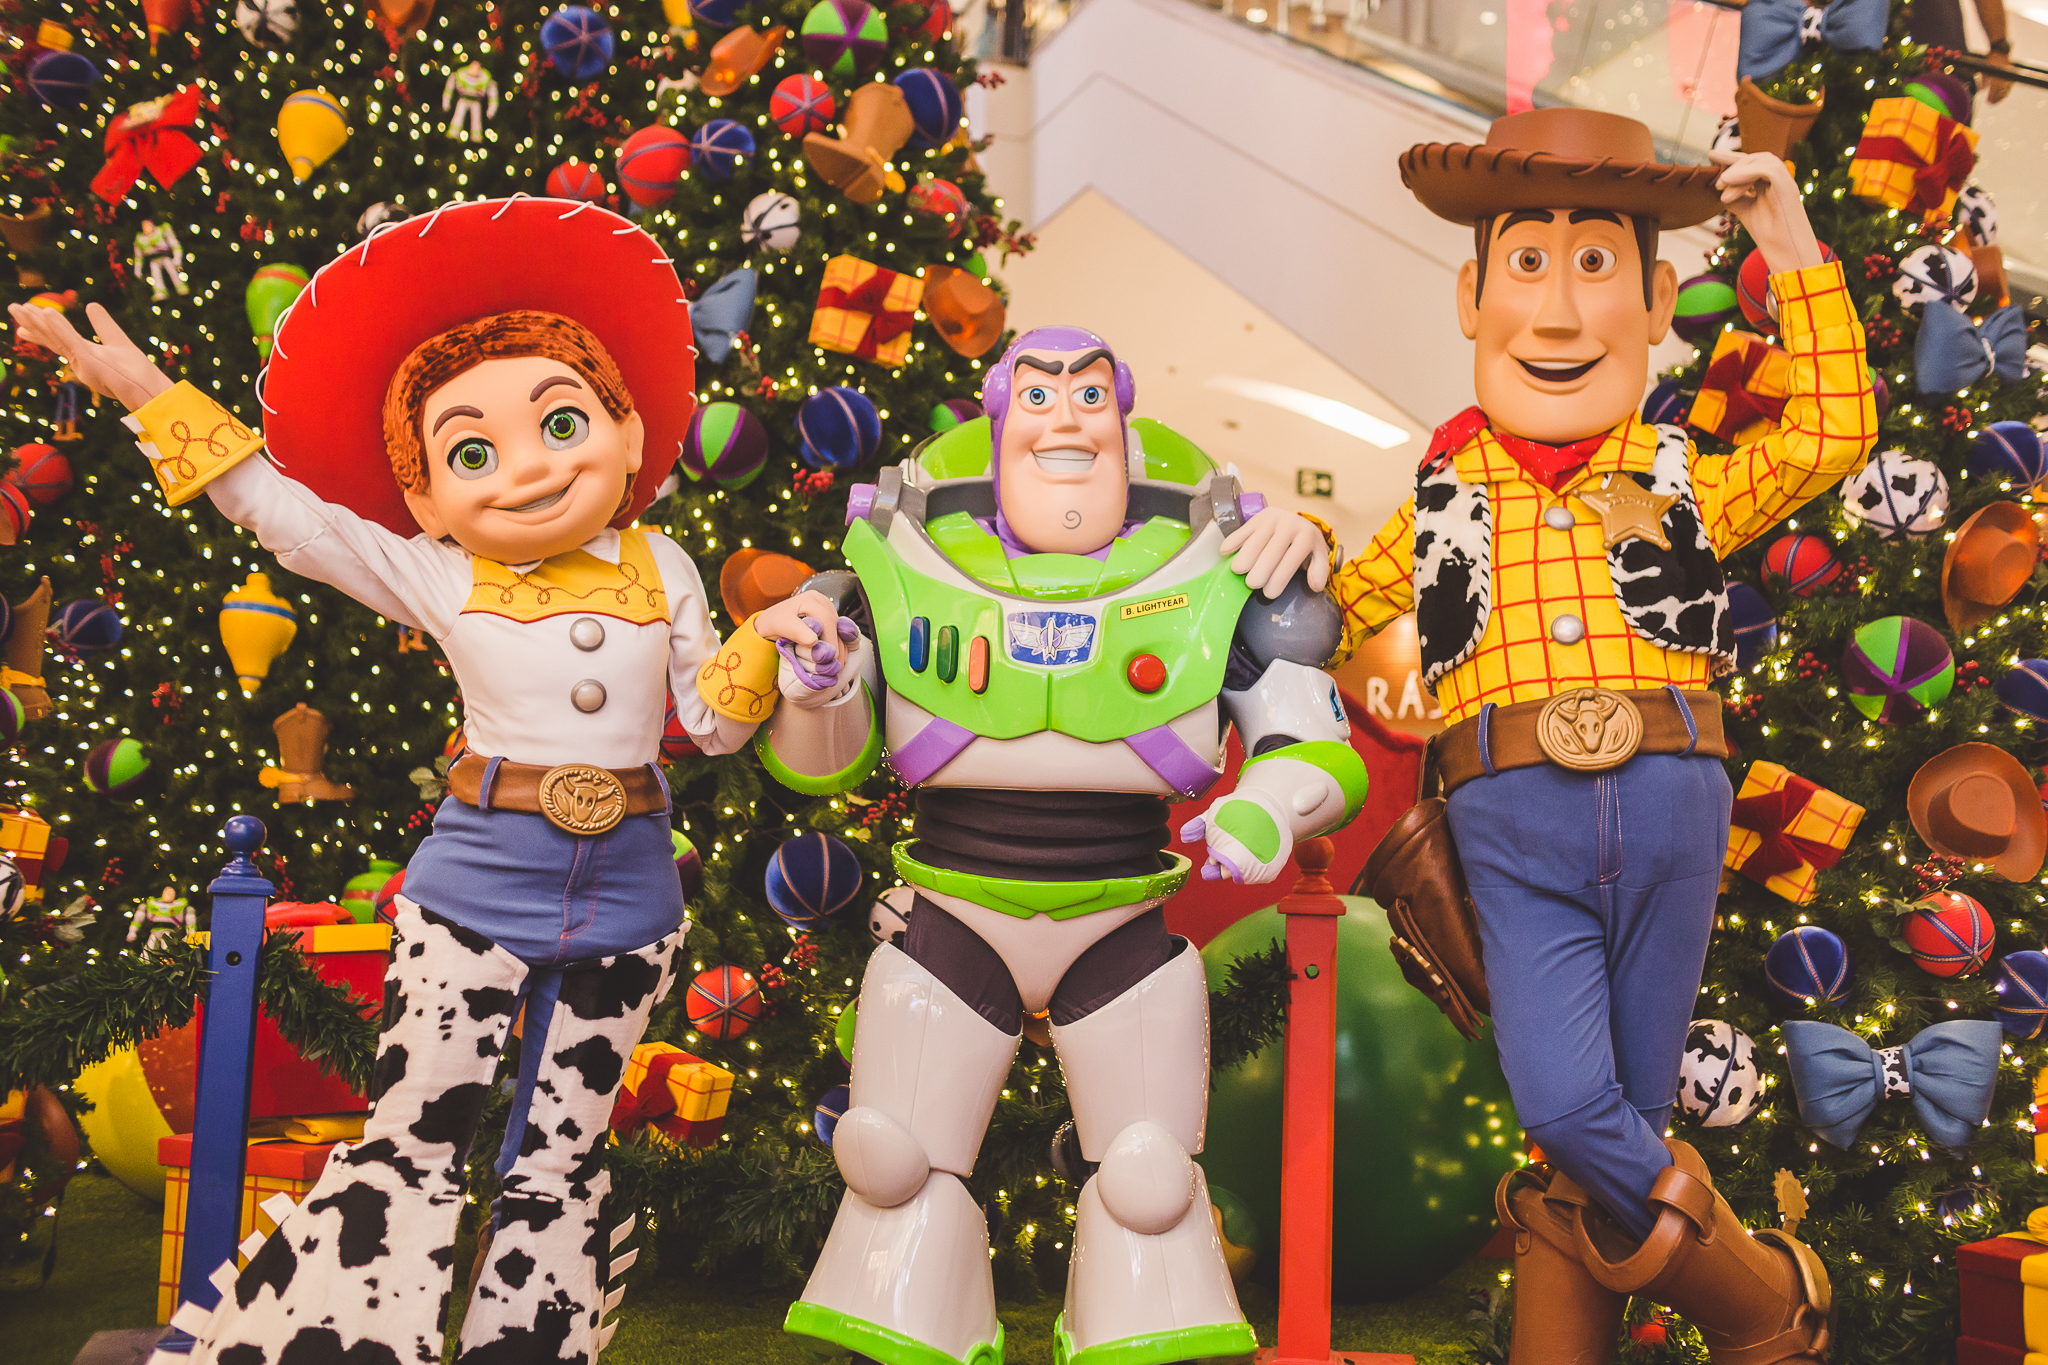 Personagens do Toy Story estarão no Shopping VillaLobos | Lazer em Família